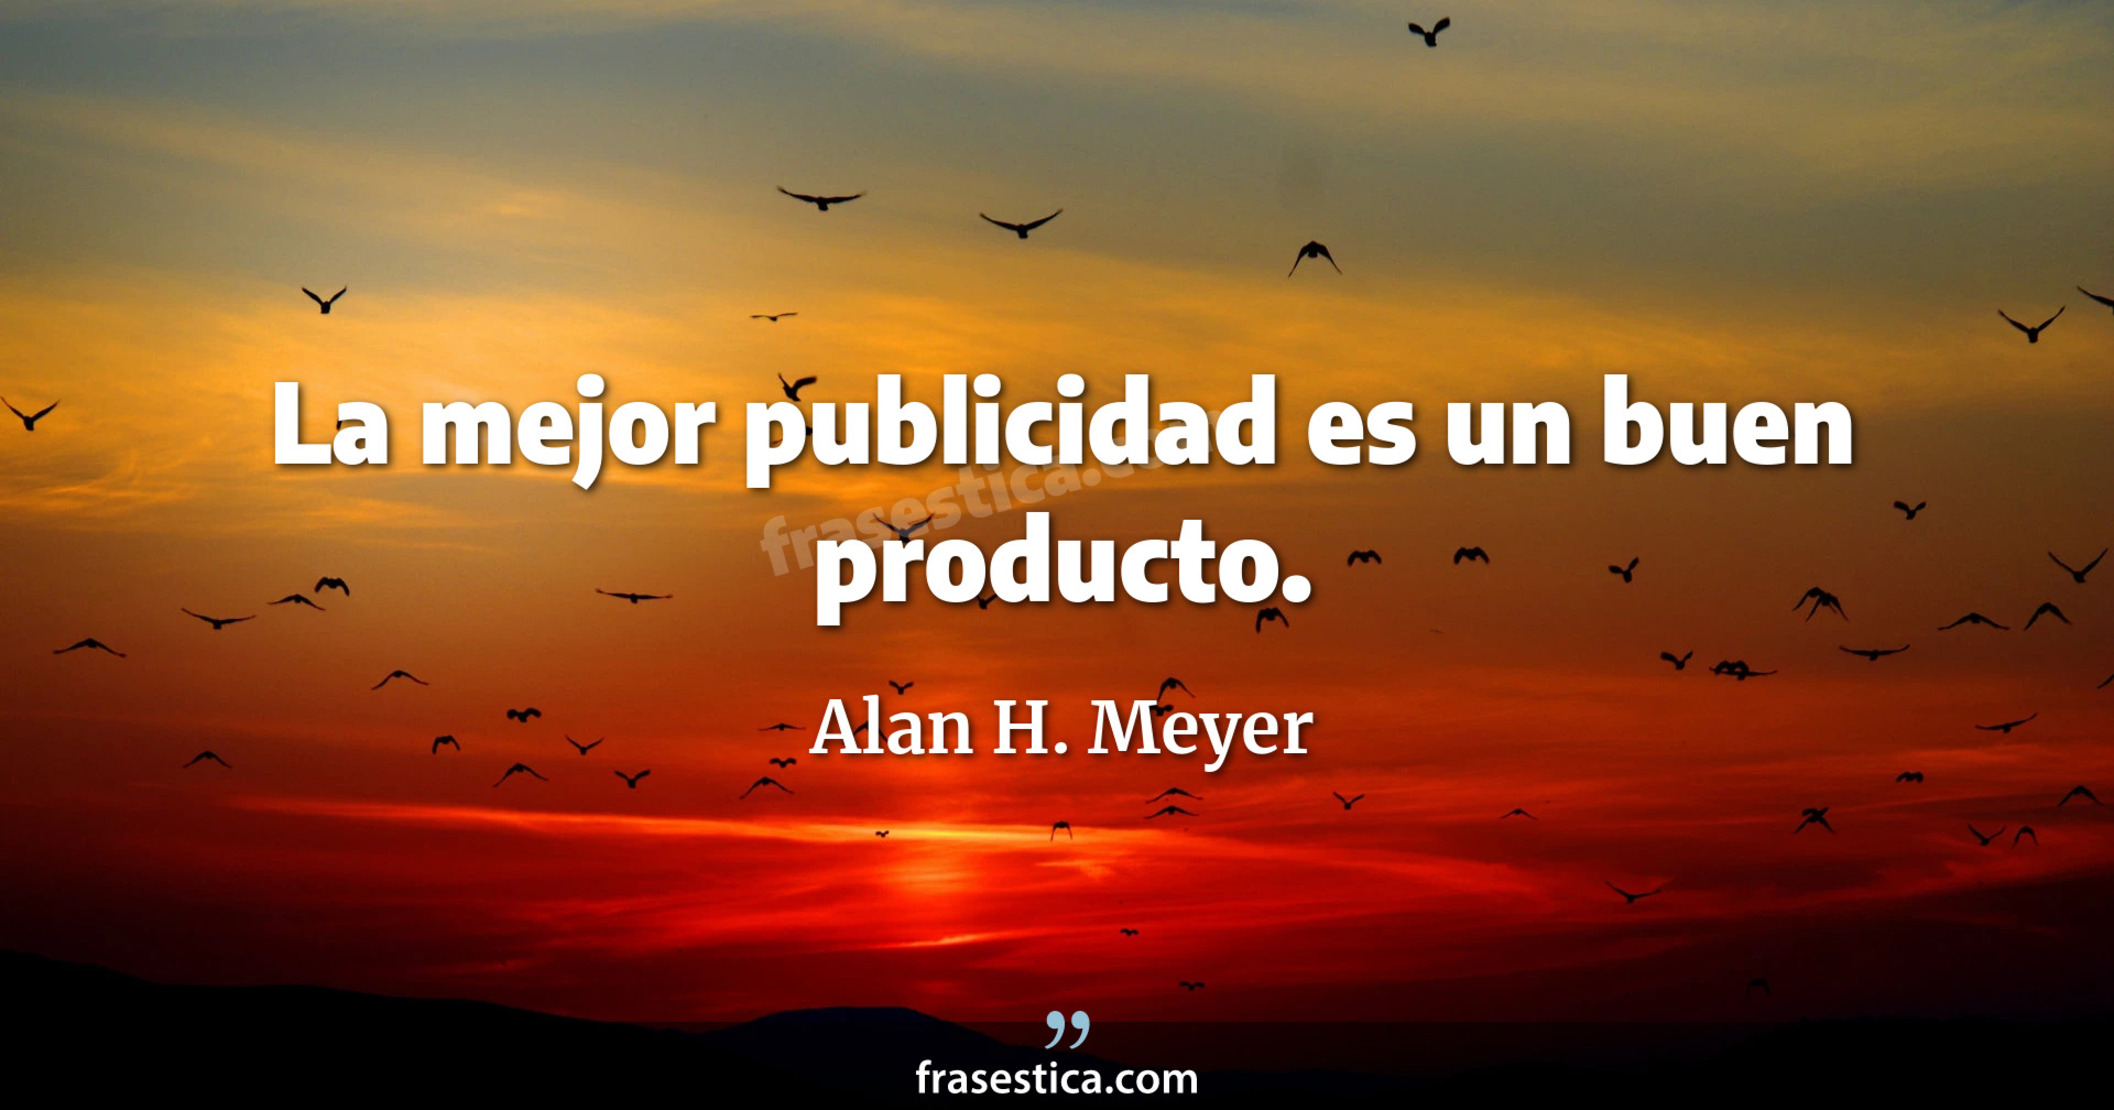 La mejor publicidad es un buen producto. - Alan H. Meyer